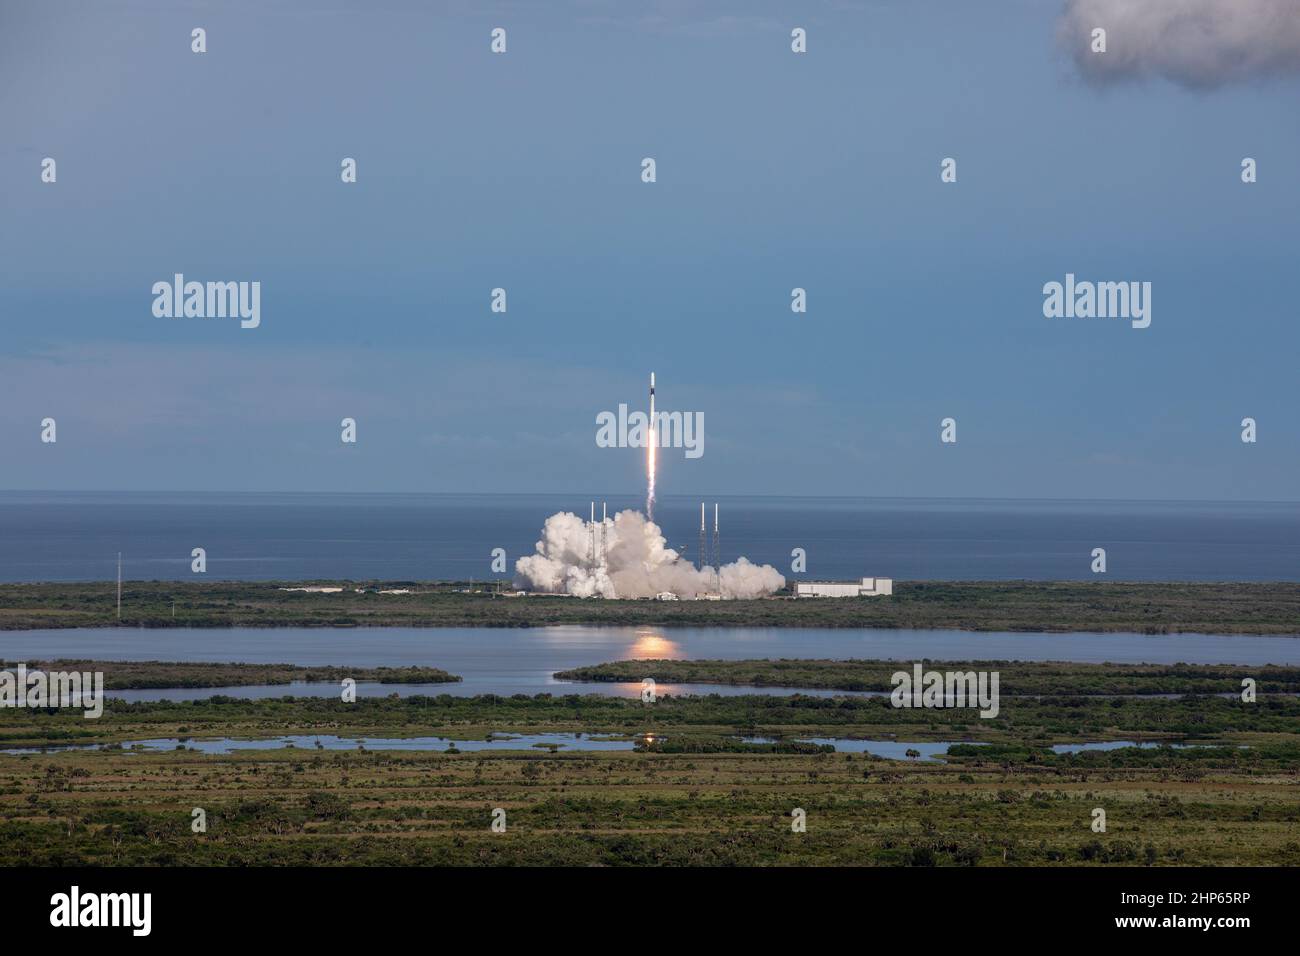 Am 25. Juli 2019 um 6:01 Uhr EDT hebt eine SpaceX Falcon 9-Rakete vom Space Launch Complex 40 auf der Cape Canaveral Air Force Station ab, die das Raumschiff Dragon auf der 18th Commercial Reupply Services (CRS-18)-Mission des Unternehmens zur Internationalen Raumstation transportiert. Stockfoto